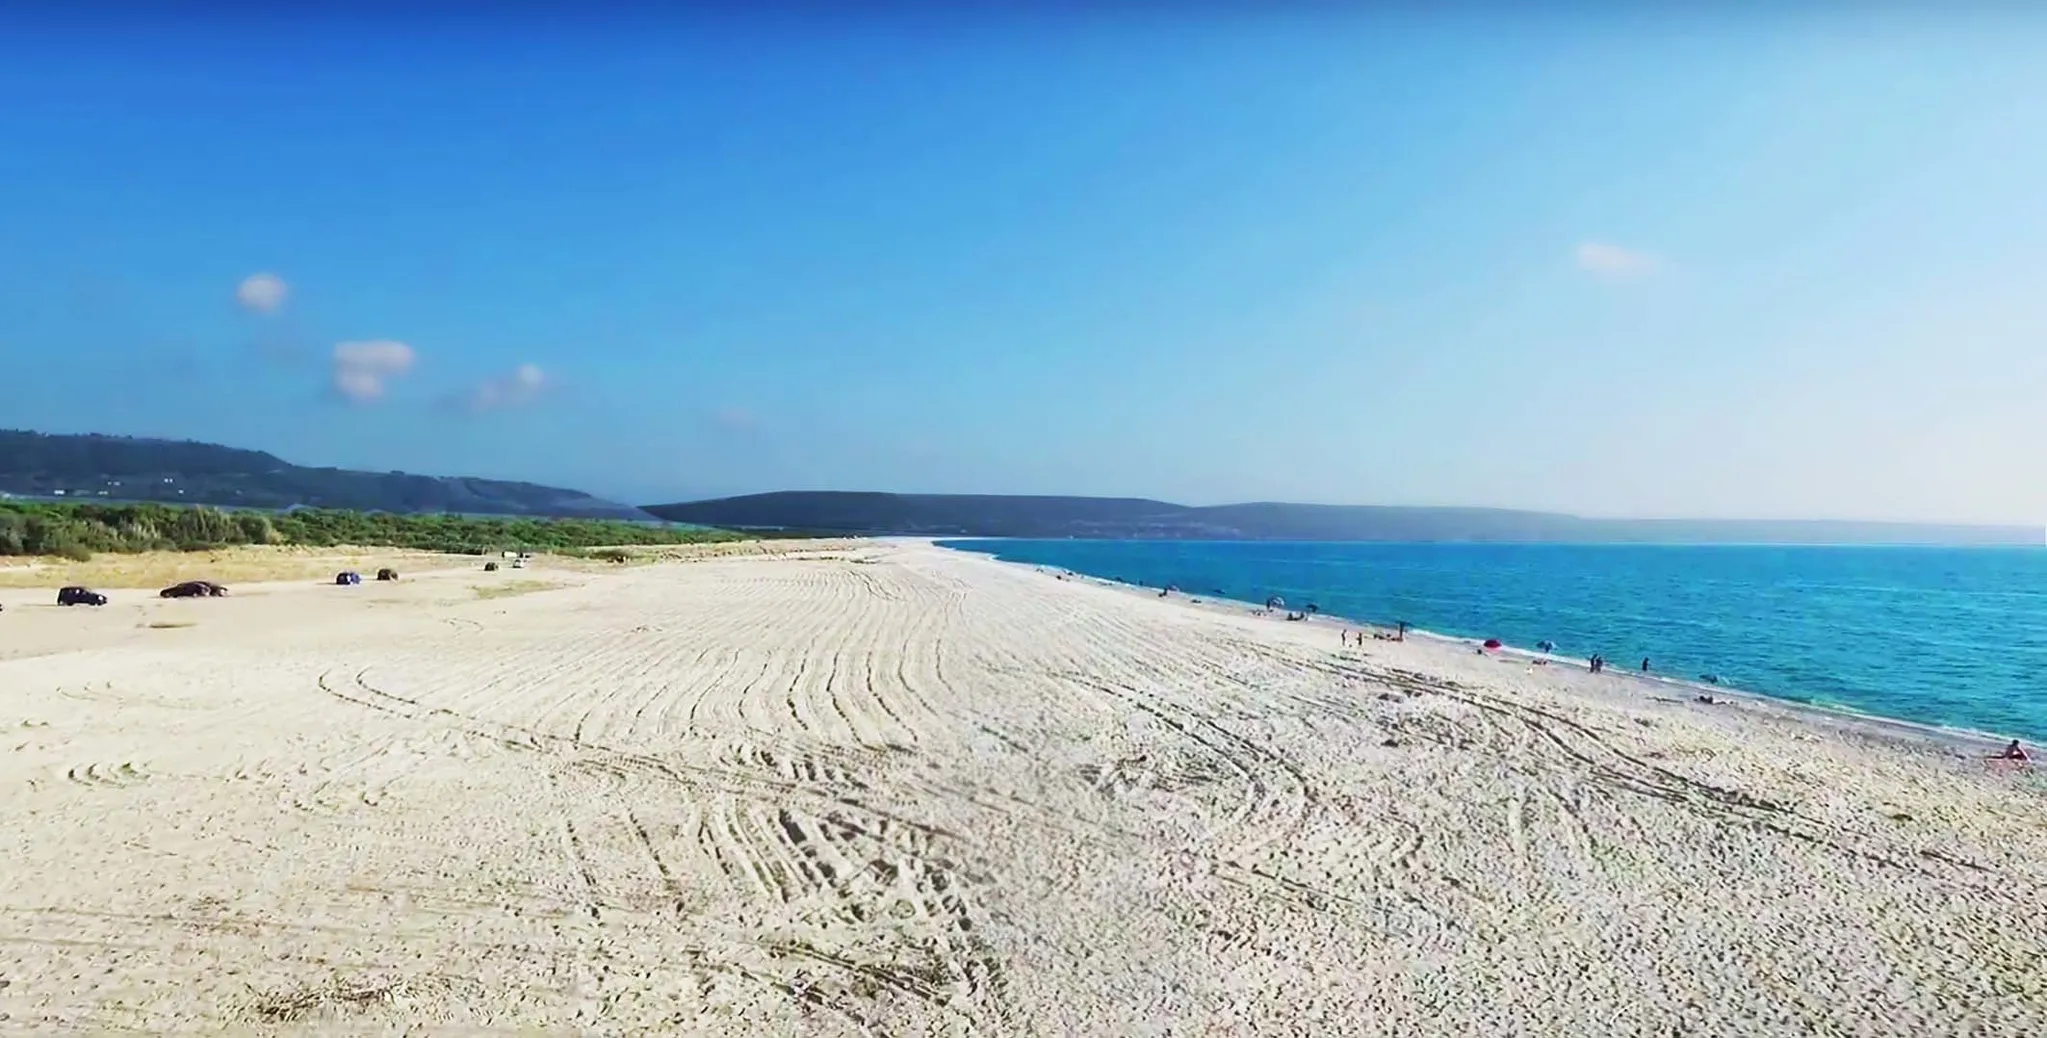 Photo showing: Curinga, i 5 km di spiaggia libera, visti da Lido Sirene, con alle spalle la pineta e i S.I.C. "Dune dell'angitola" e "Palude di Imbutillo".